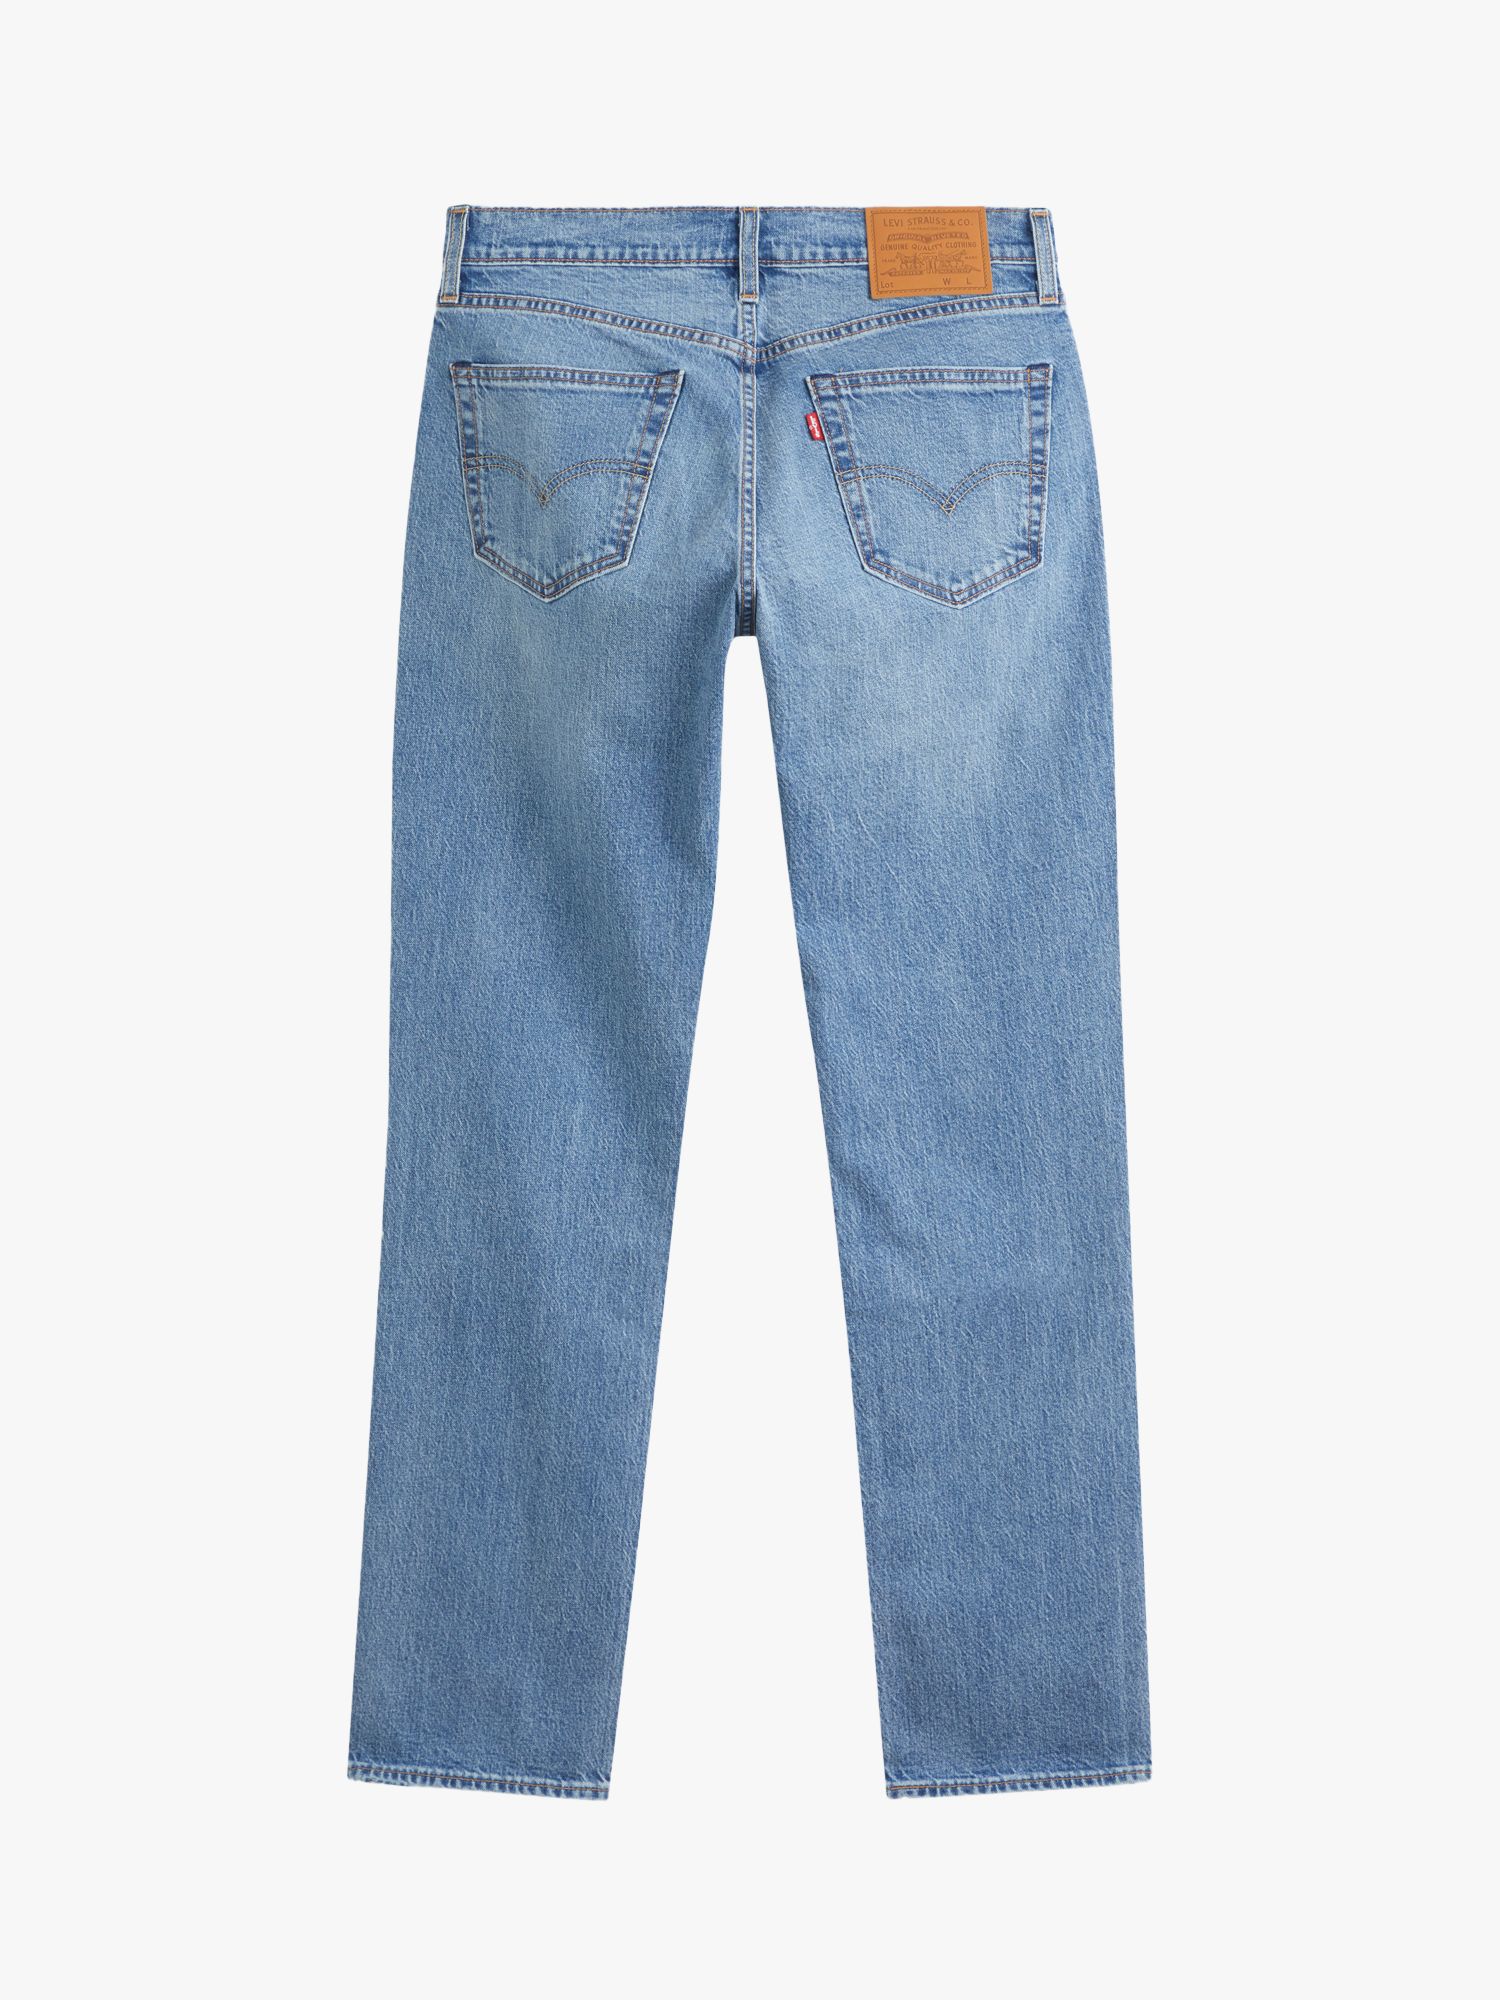 Levi's 511 Slim Jeans, Stone Horizon at John Lewis & Partners